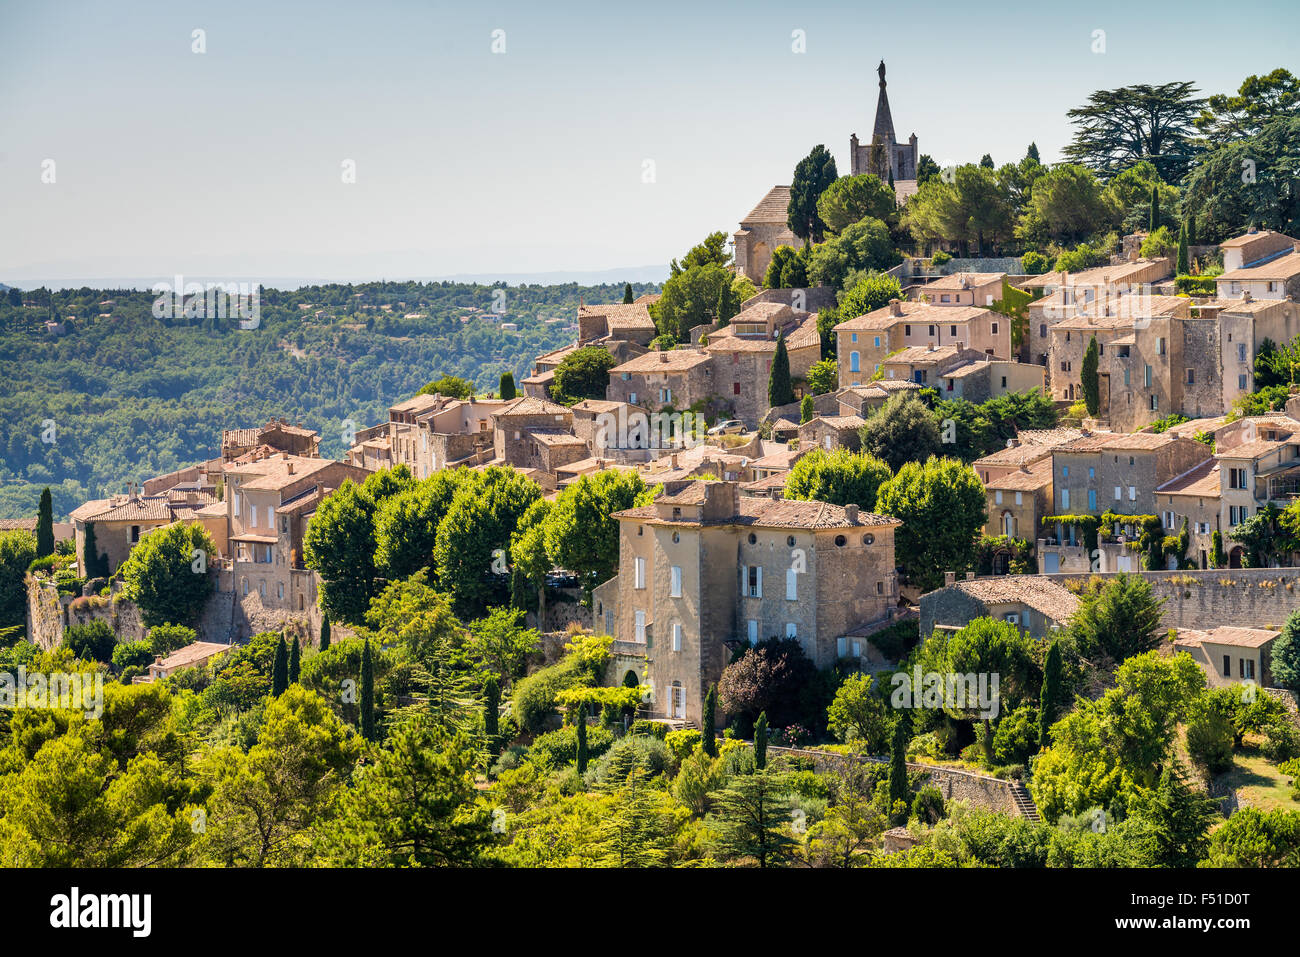 Village de Bonnieux, Vaucluse, Luberon, France, Union européenne, Europe Banque D'Images